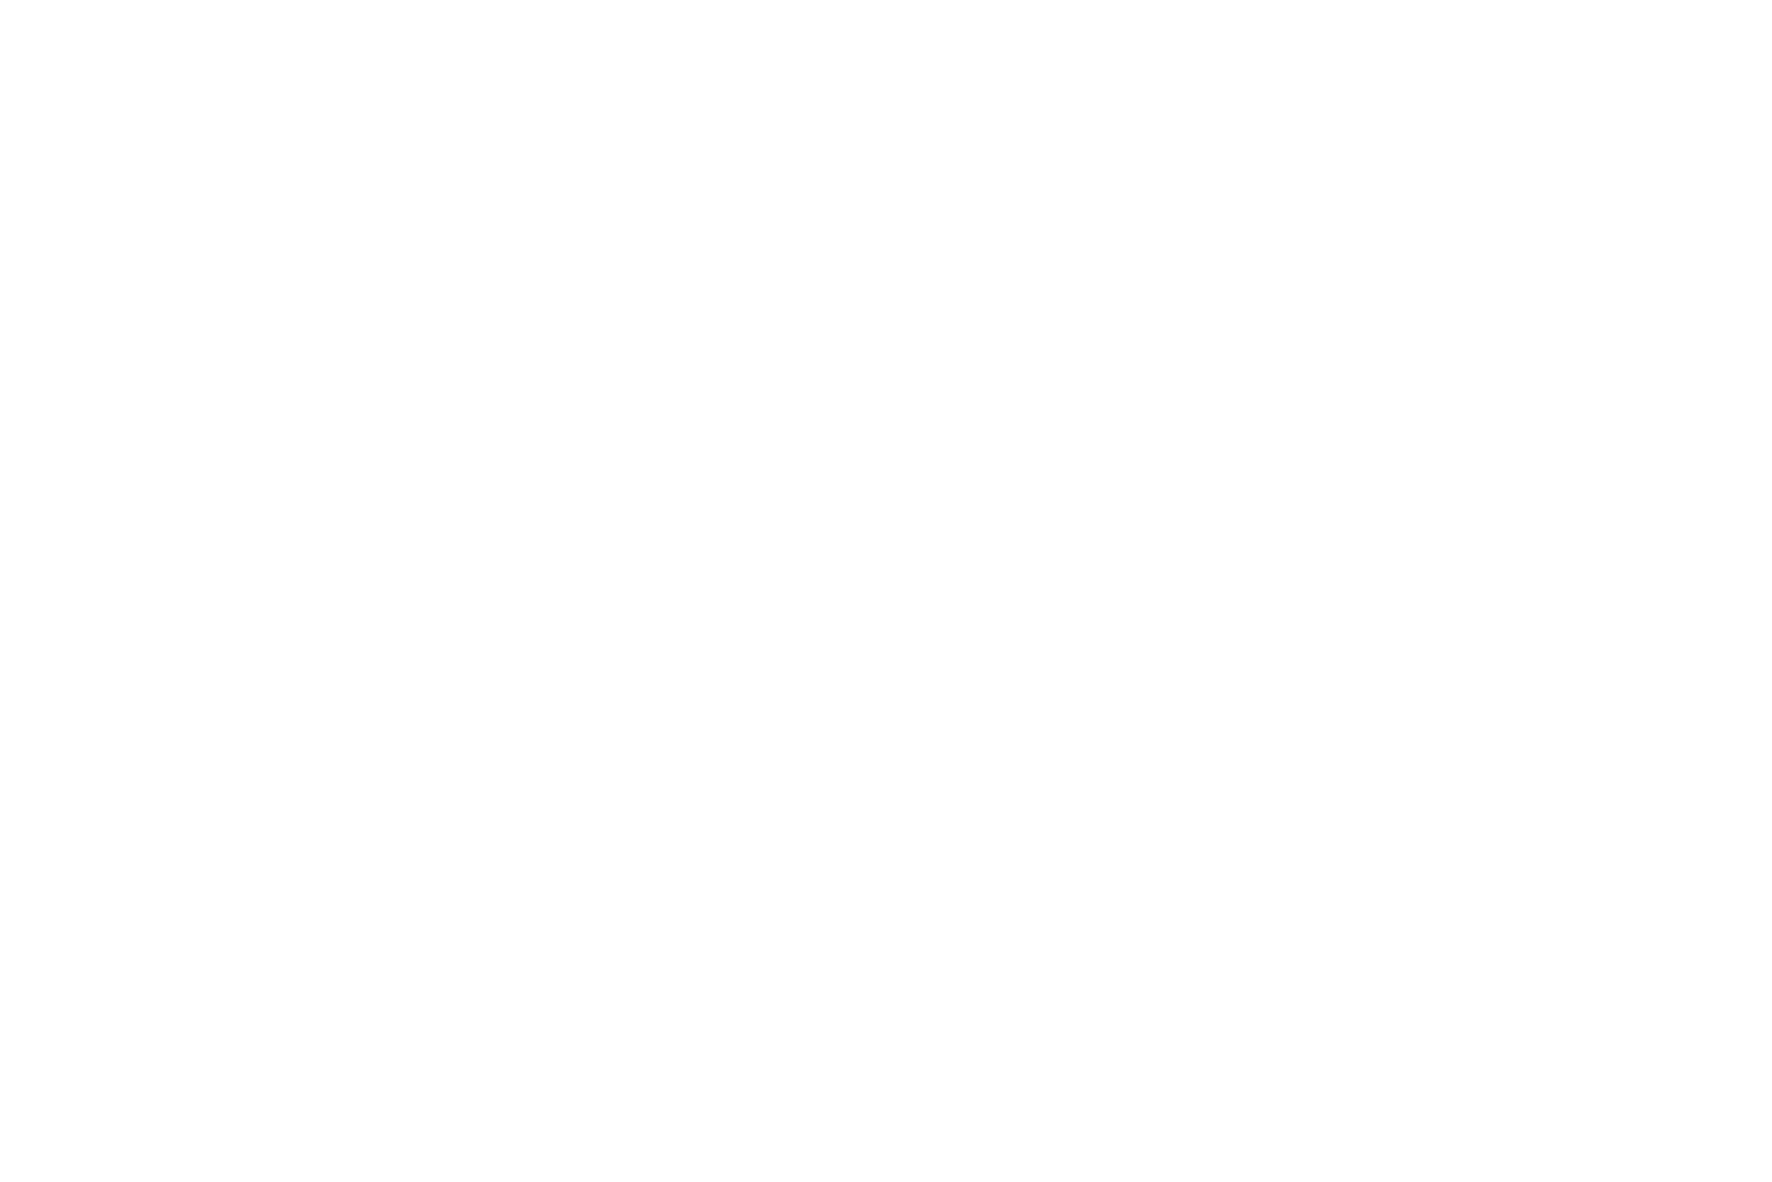 McKinsey - Digital NEXA Consulting Client